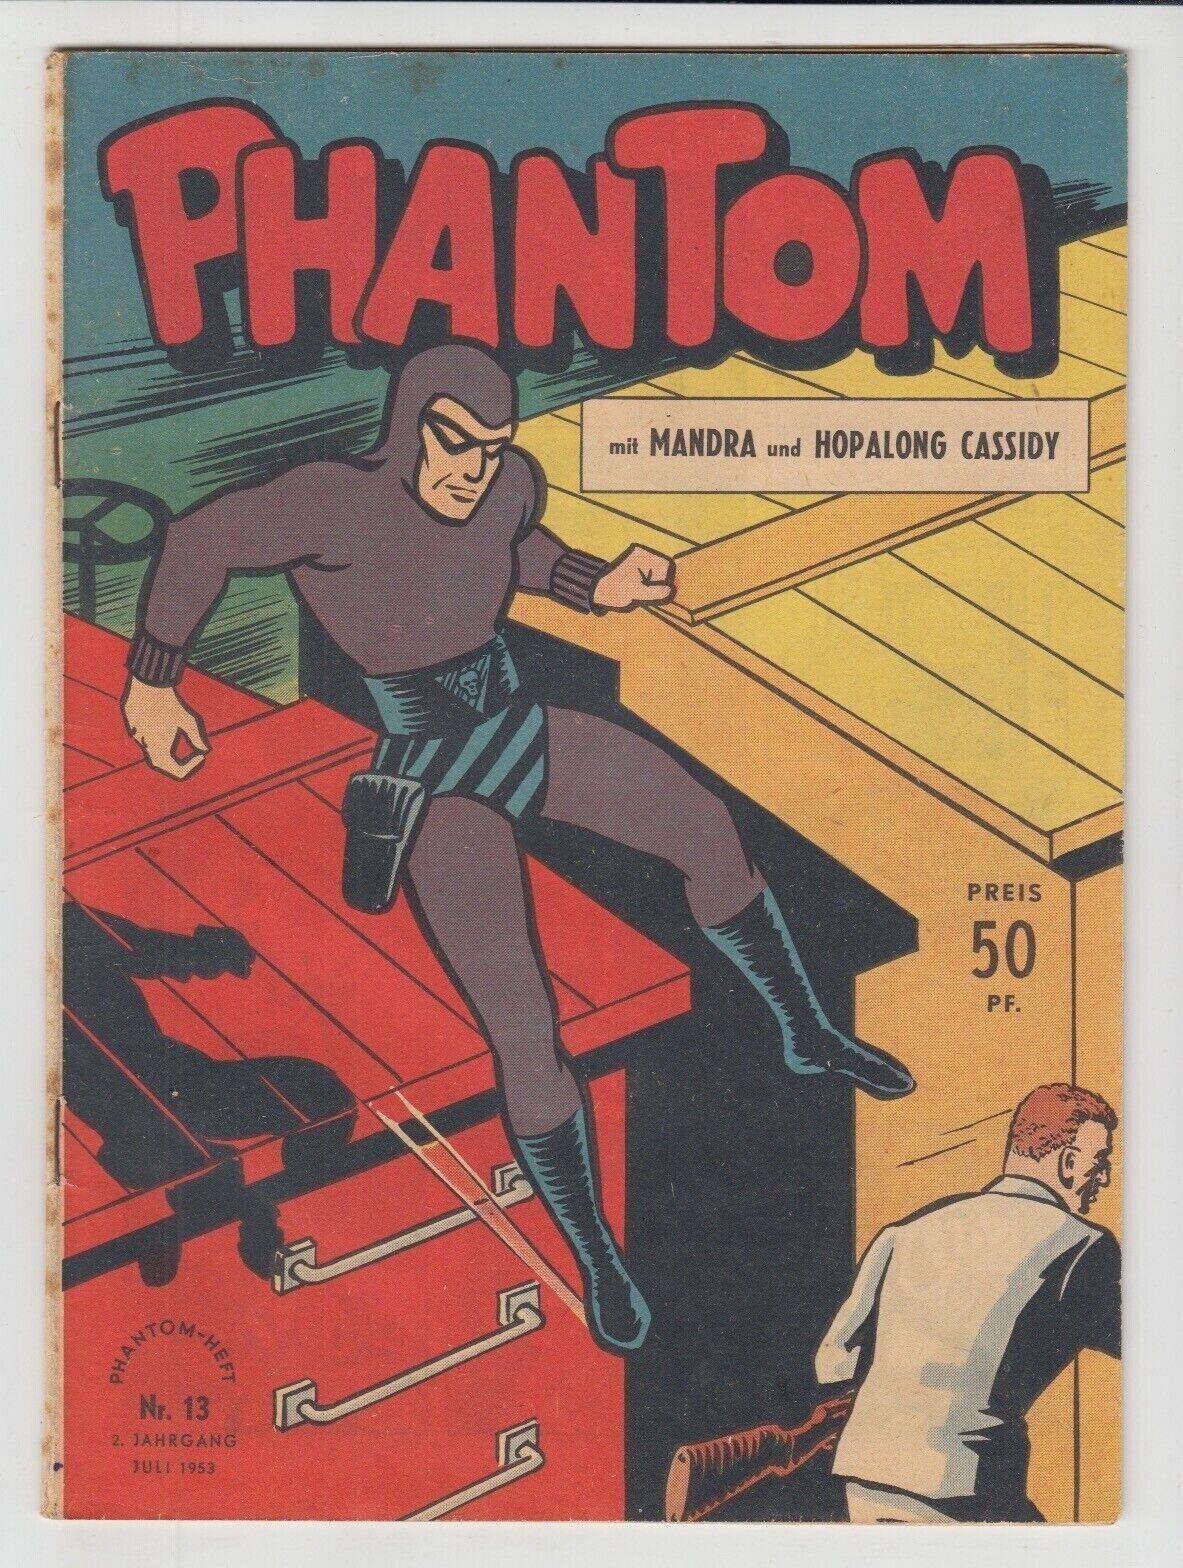 THE PHANTOM #13 ~ 1953 RARE GERMAM COMIC